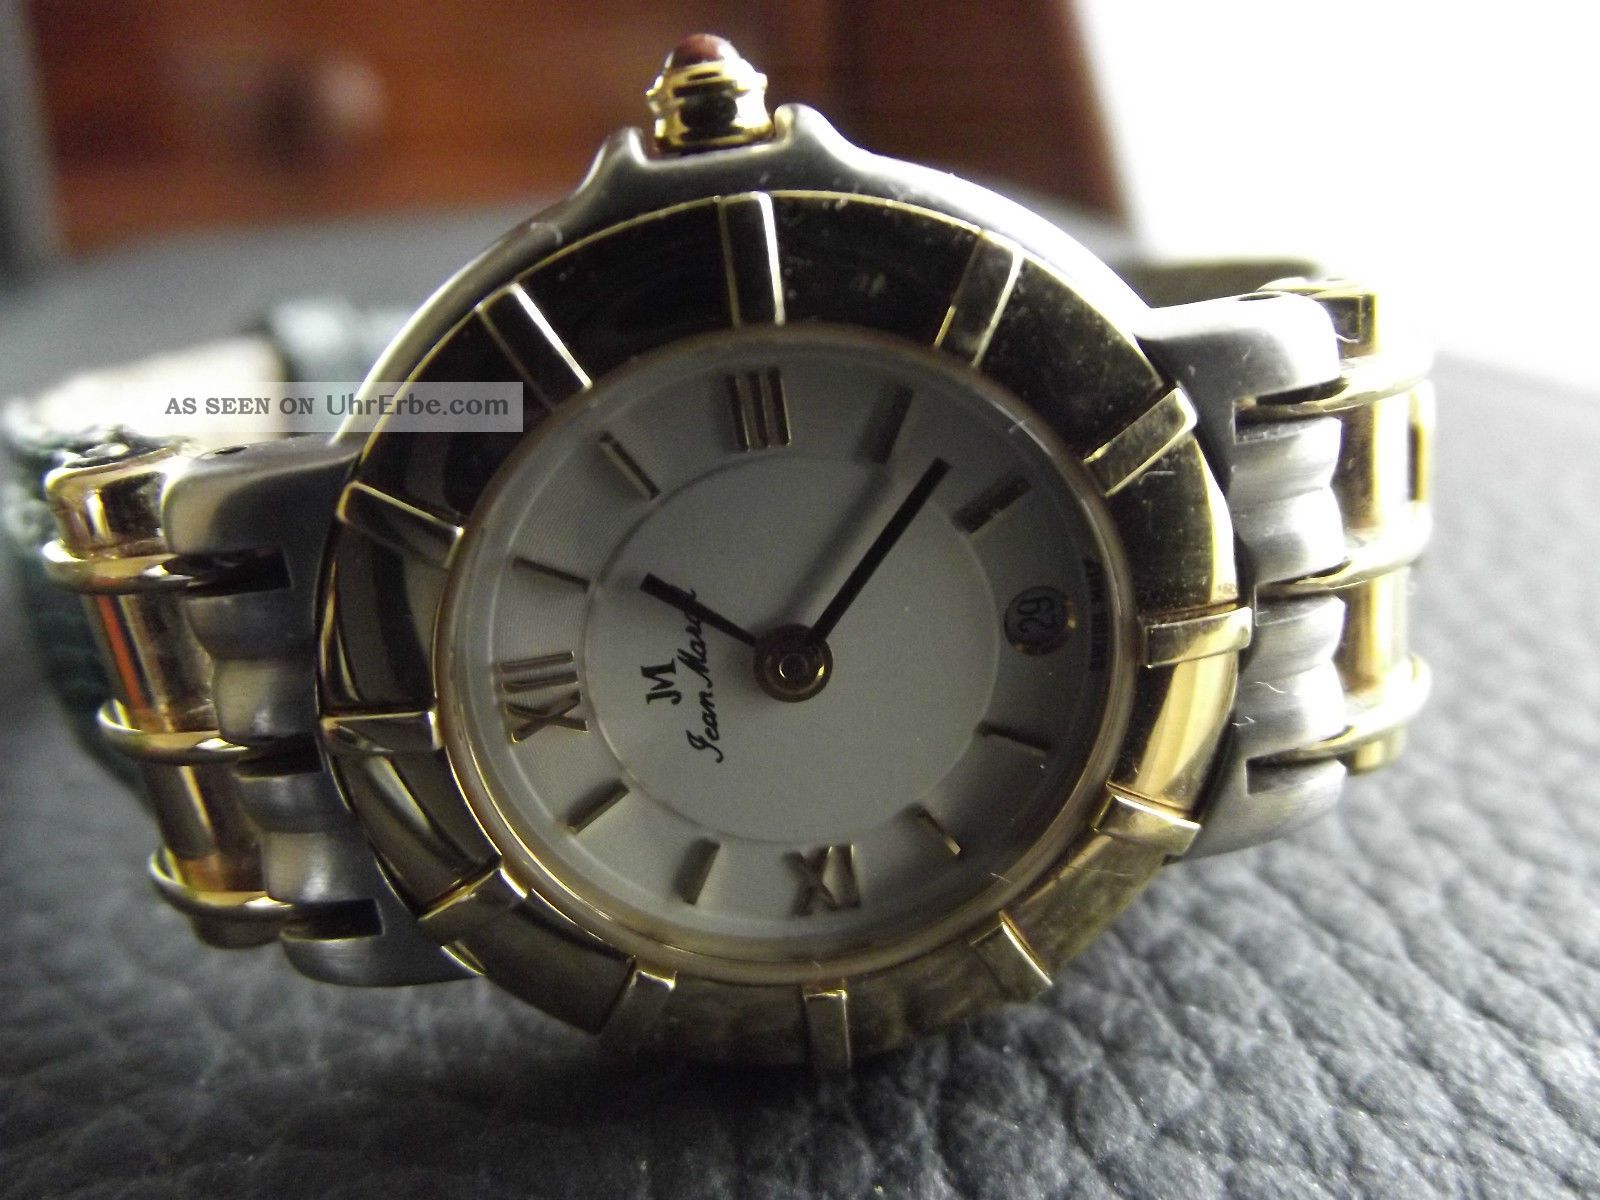 Jean Marcel Eine Luxus - Uhr Edelmarke, Swiss Made